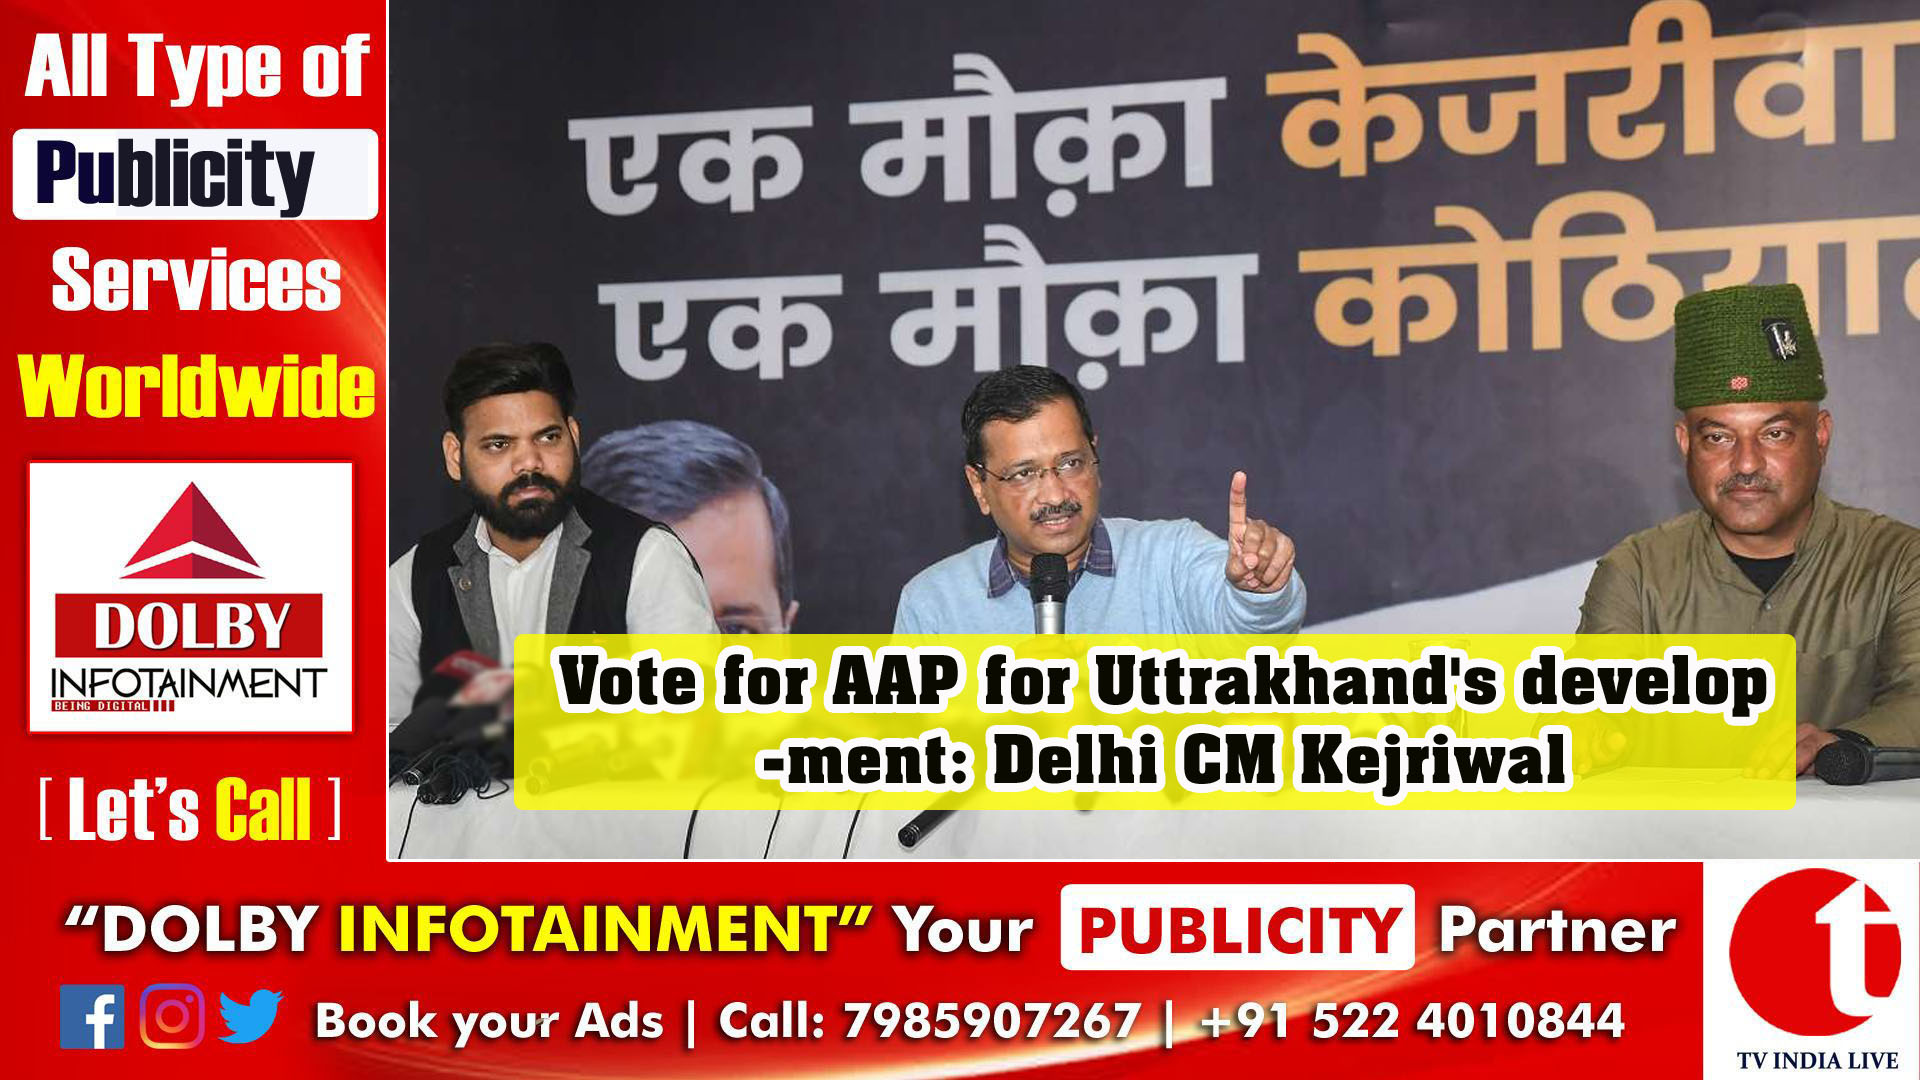 Vote for AAP for Uttrakhand's development: Delhi CM Kejriwal